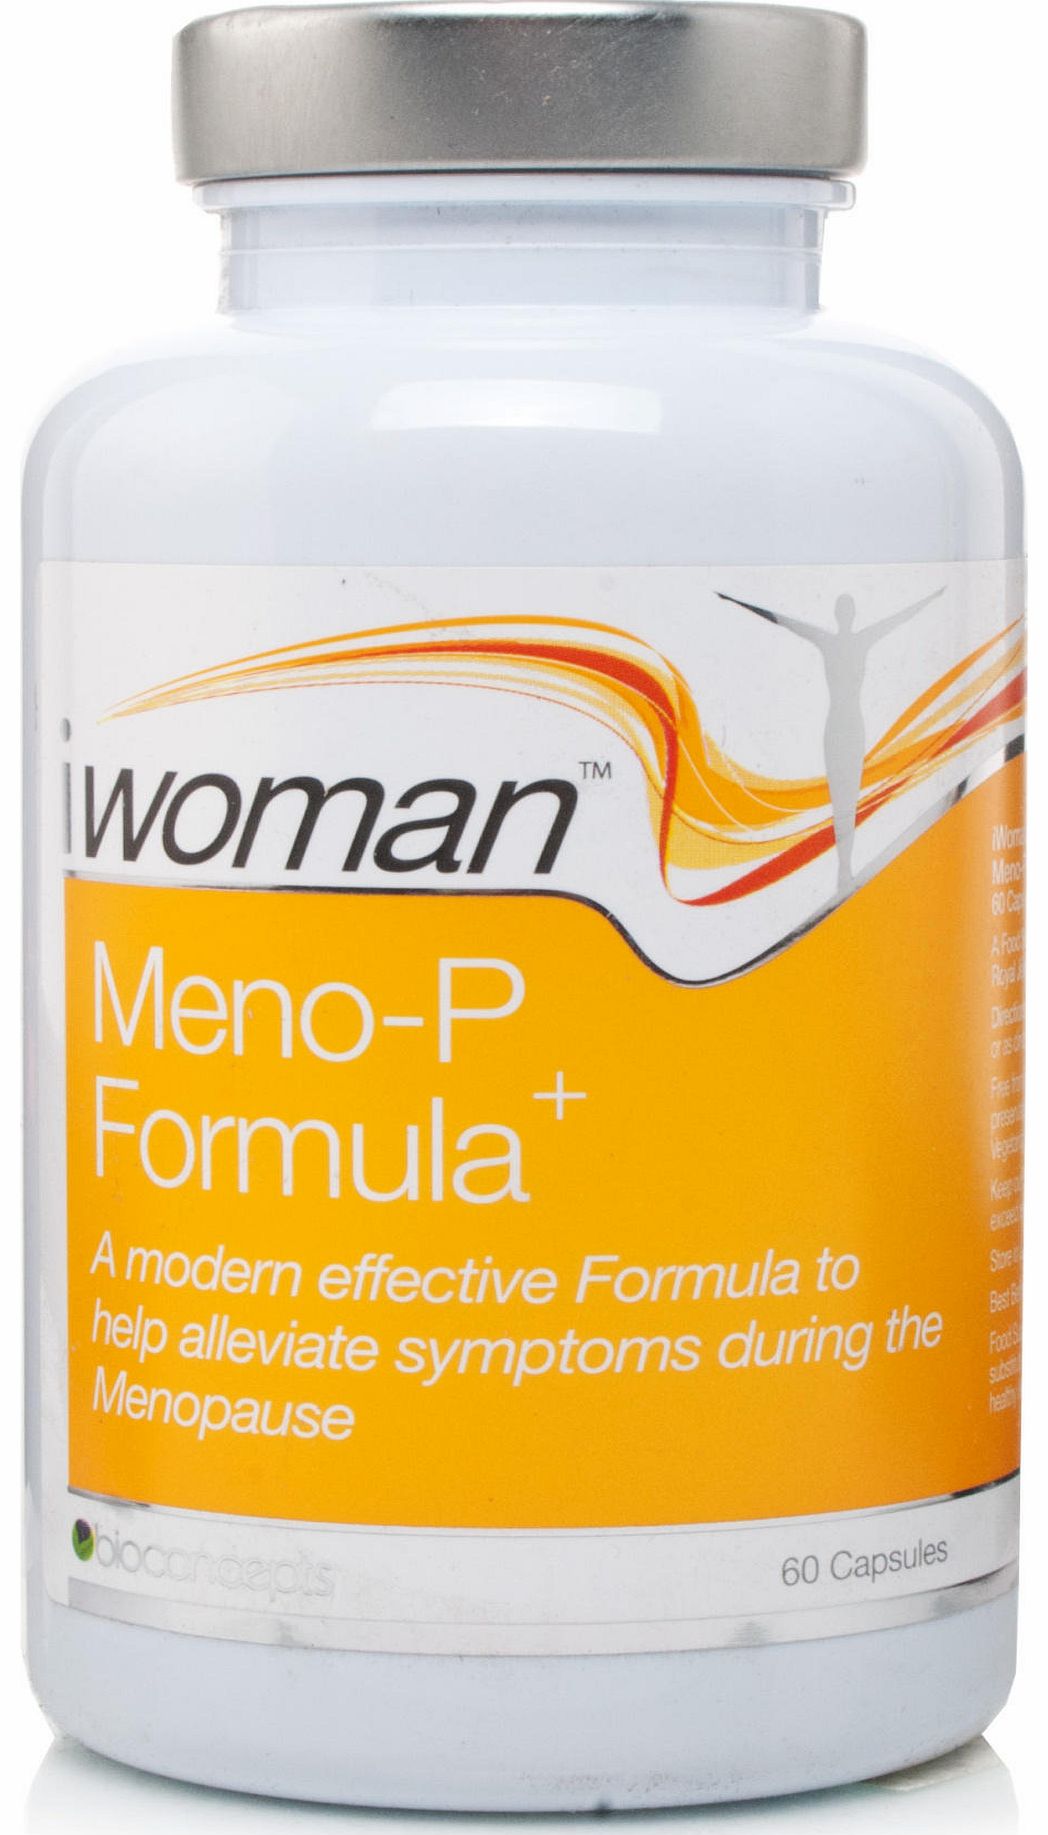 Bioconcepts iwoman Meno-P Formula